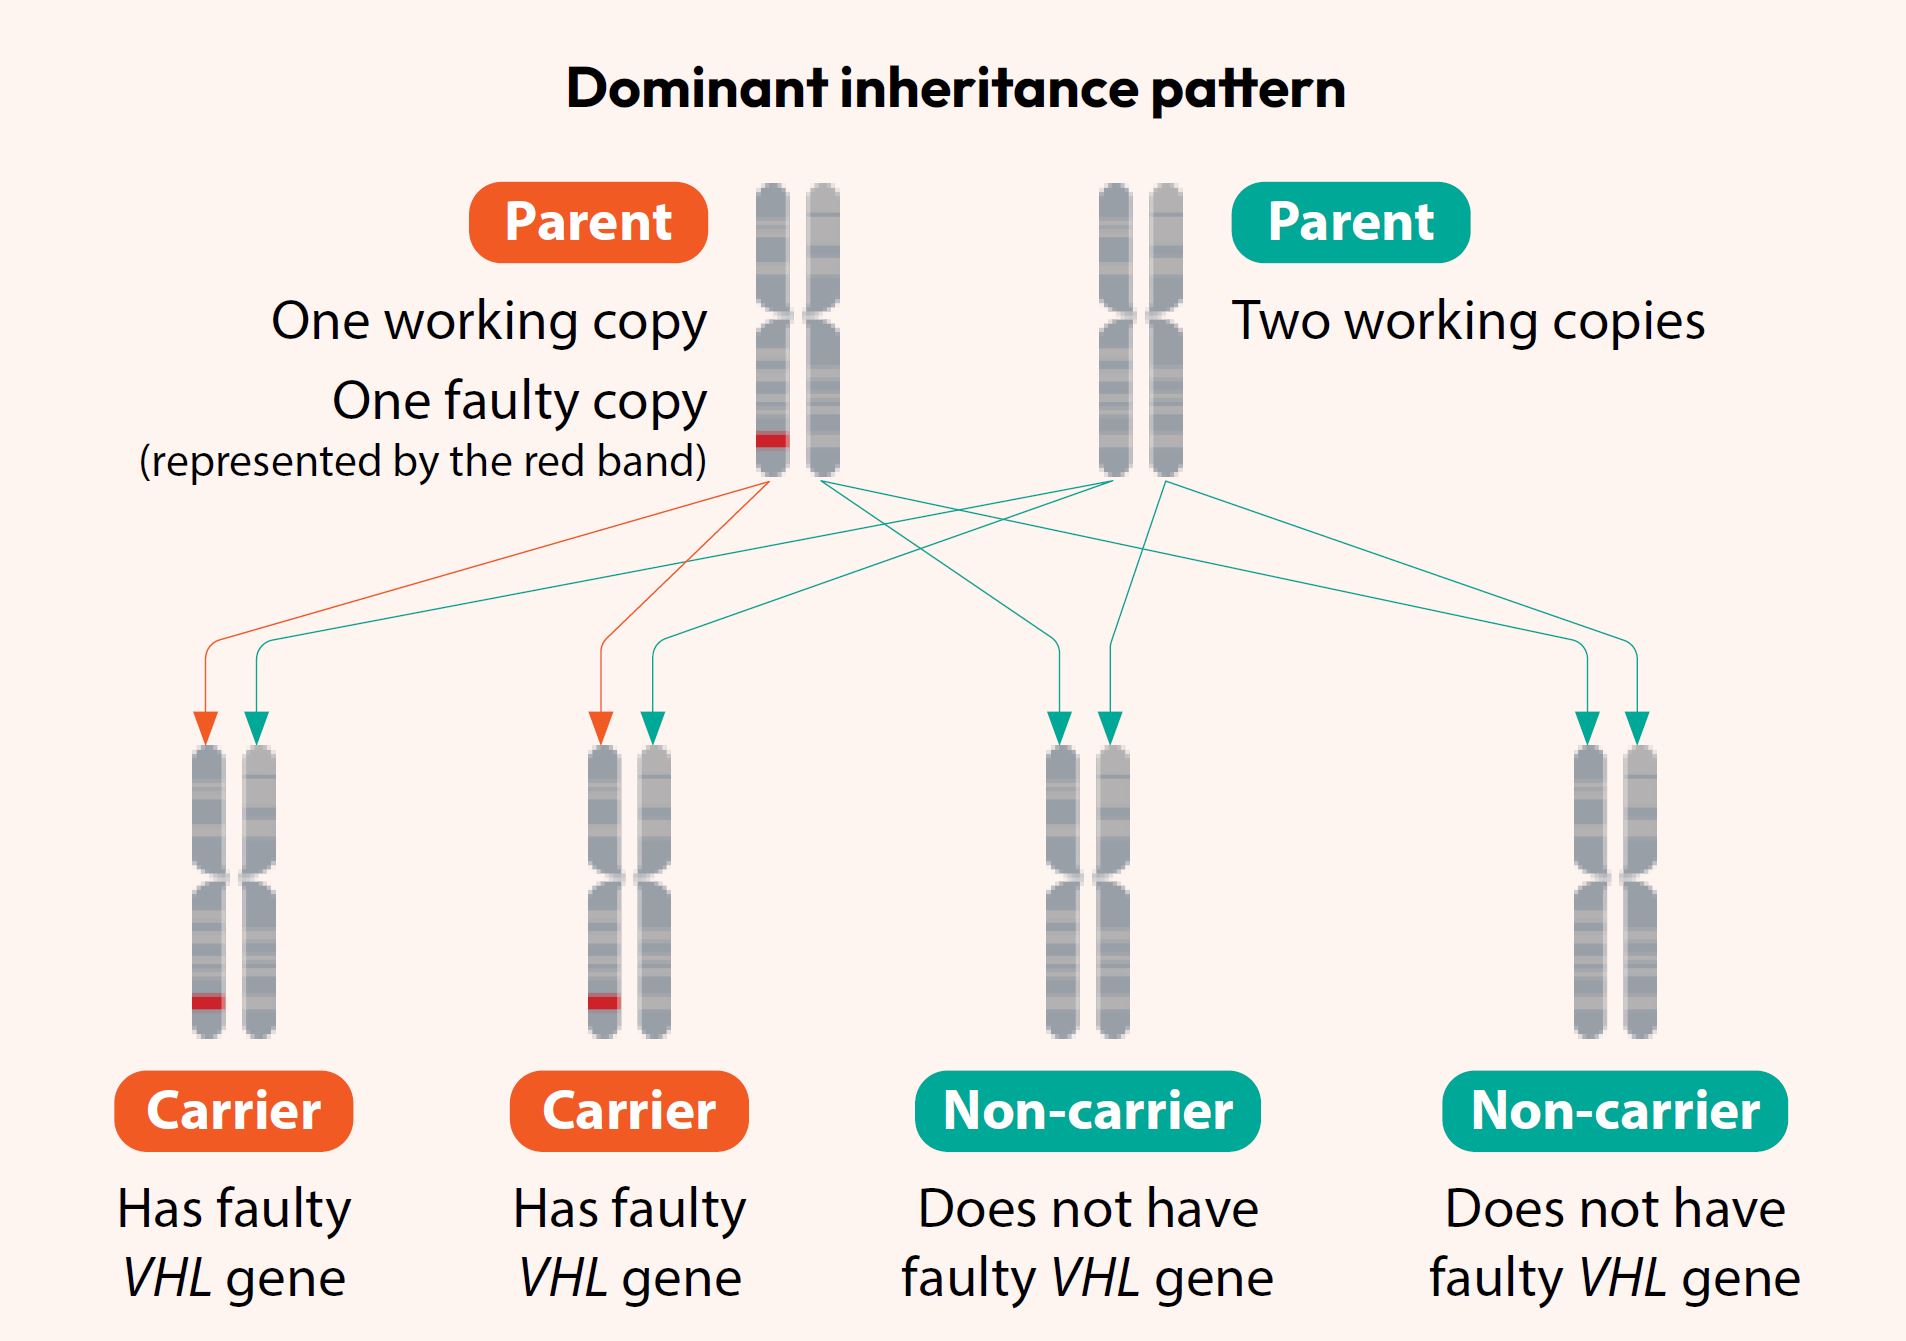 Dominant inheritance pattern - Von Hippel-Lindau Syndrome